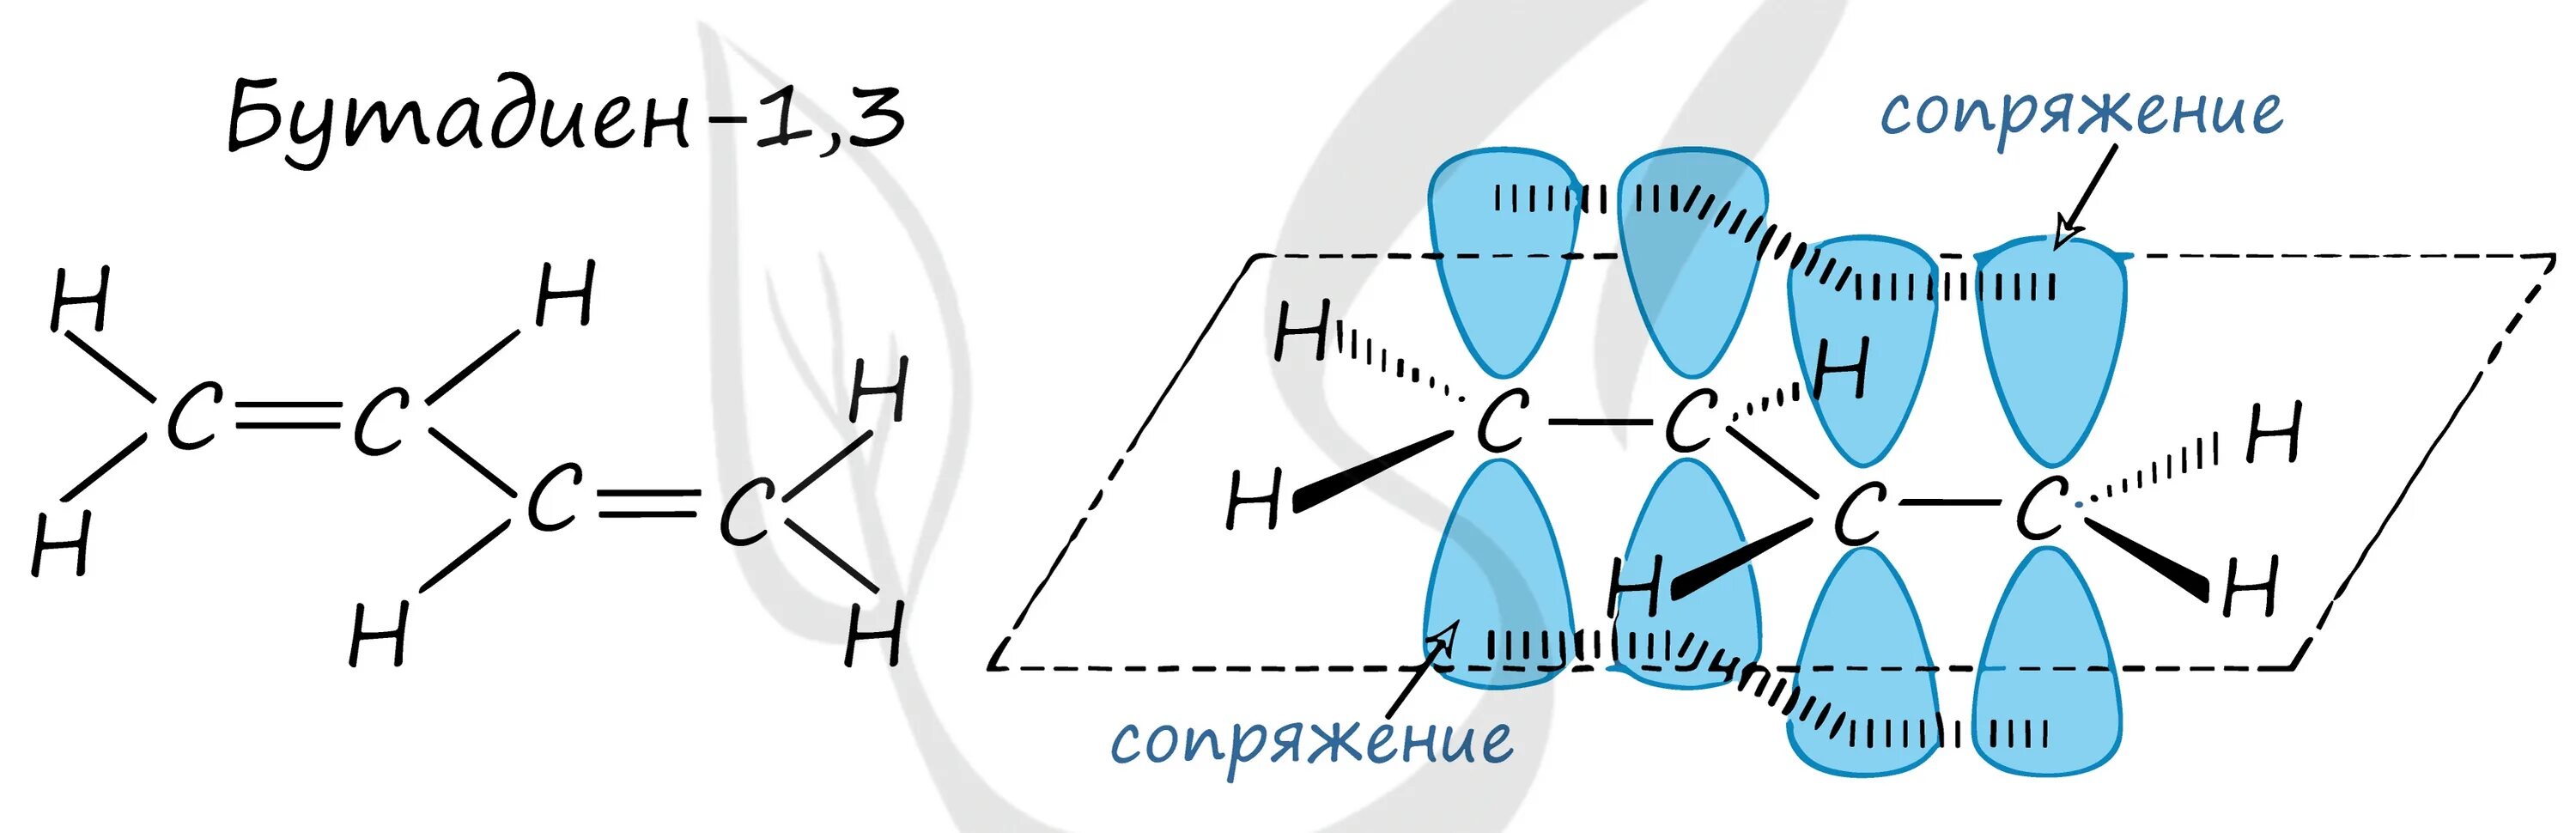 Бутадиен 1 3 связи. Строение молекулы бутадиена 1.3. Электронное строение молекулы бутадиена-1.3. Бутадиен строение молекулы. Схема бутадиена 1.3.